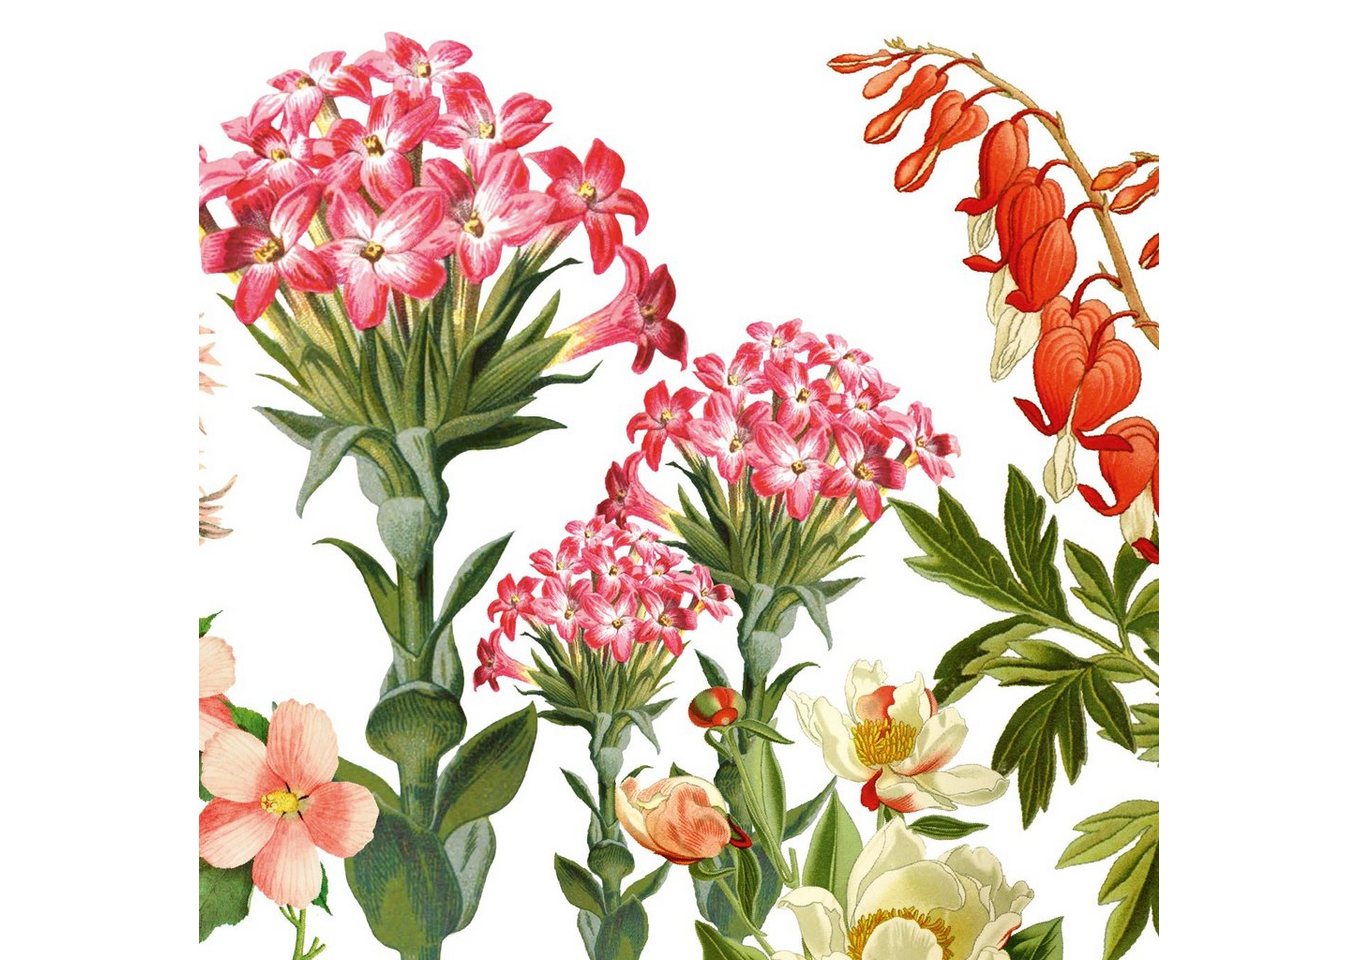 anna wand Bordüre Blumengarten rosarot/grün auf weiß - selbstklebend, botanisch, selbstklebend von anna wand